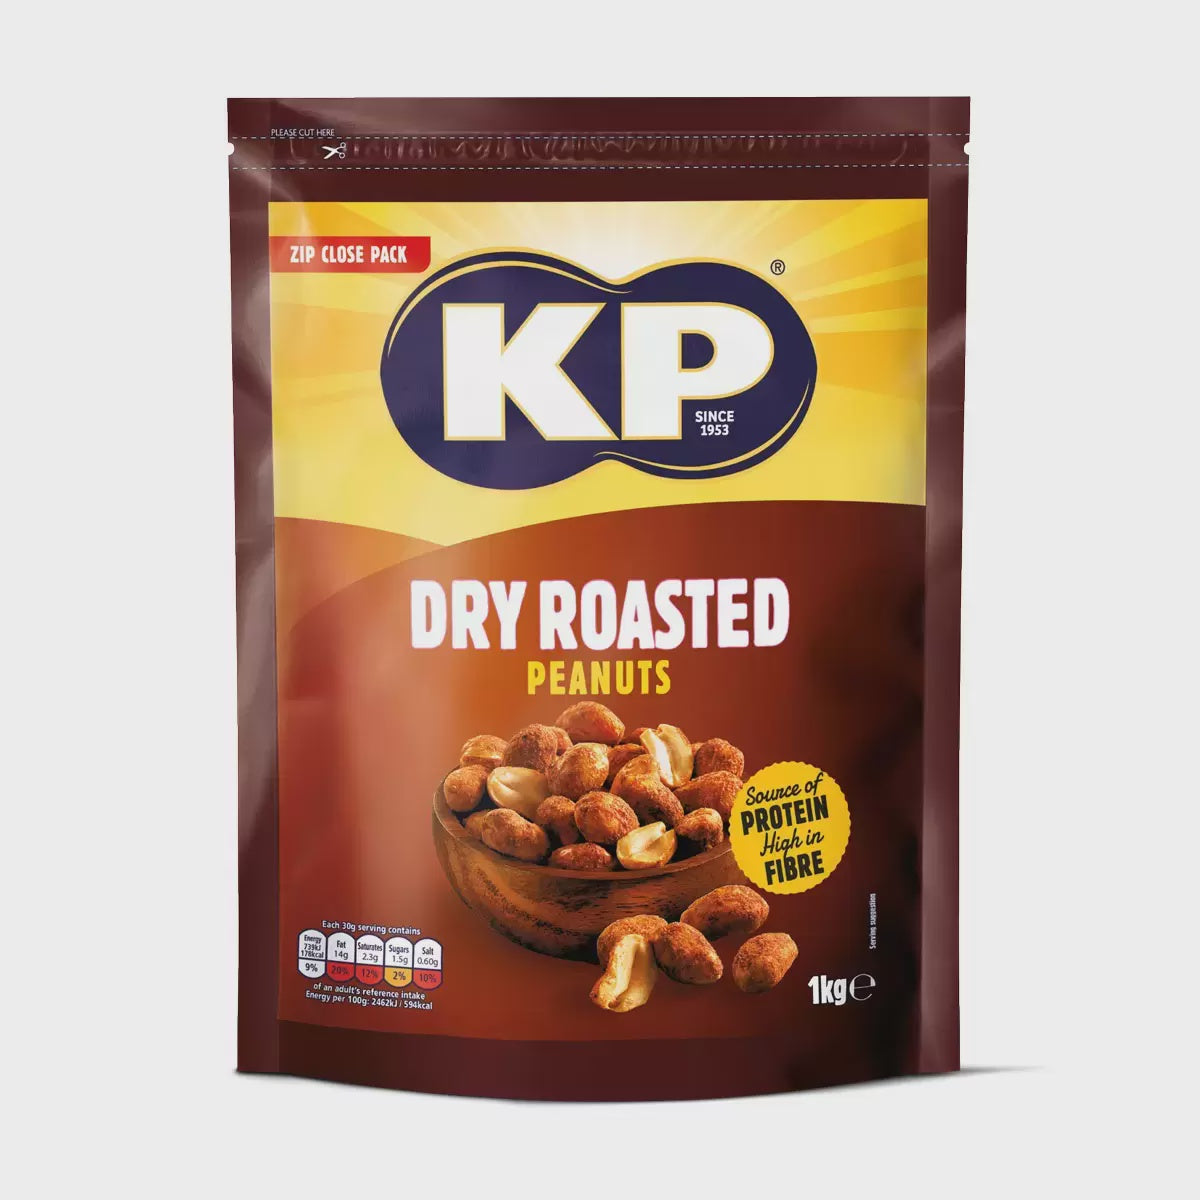 KP Dry Roasted Peanuts 1kg*